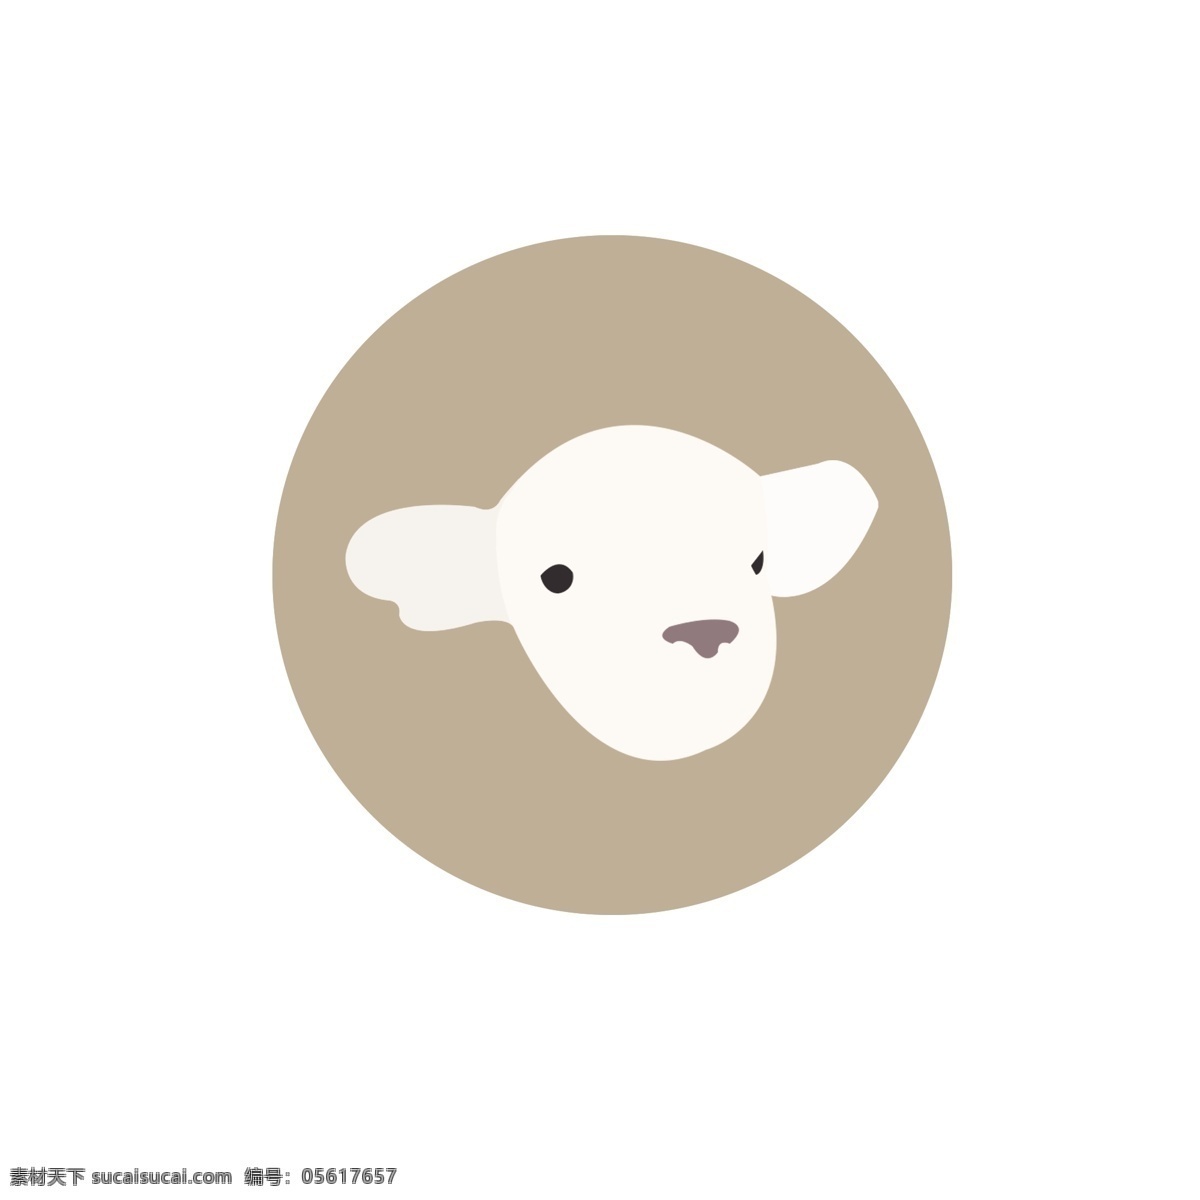 可爱 羊头 装饰 图标 矢量图案 卡通有趣 扁平化 小羊羔 装饰图